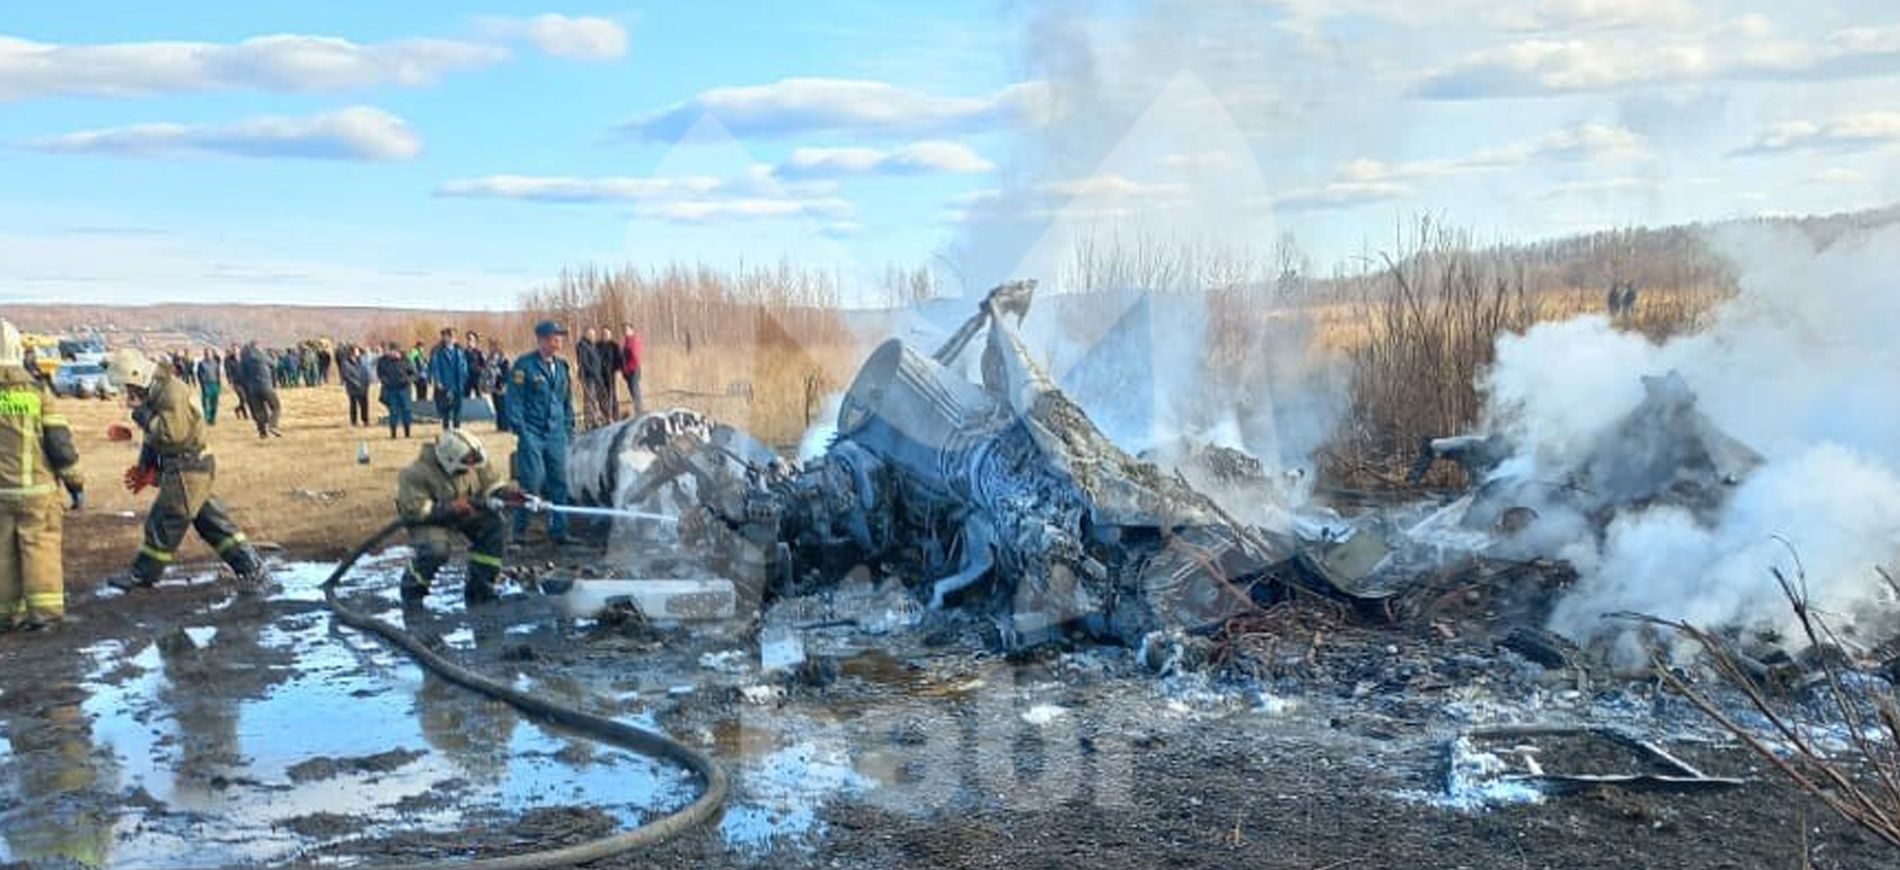 19 май 2019. Крушение вертолёта в Могоче.